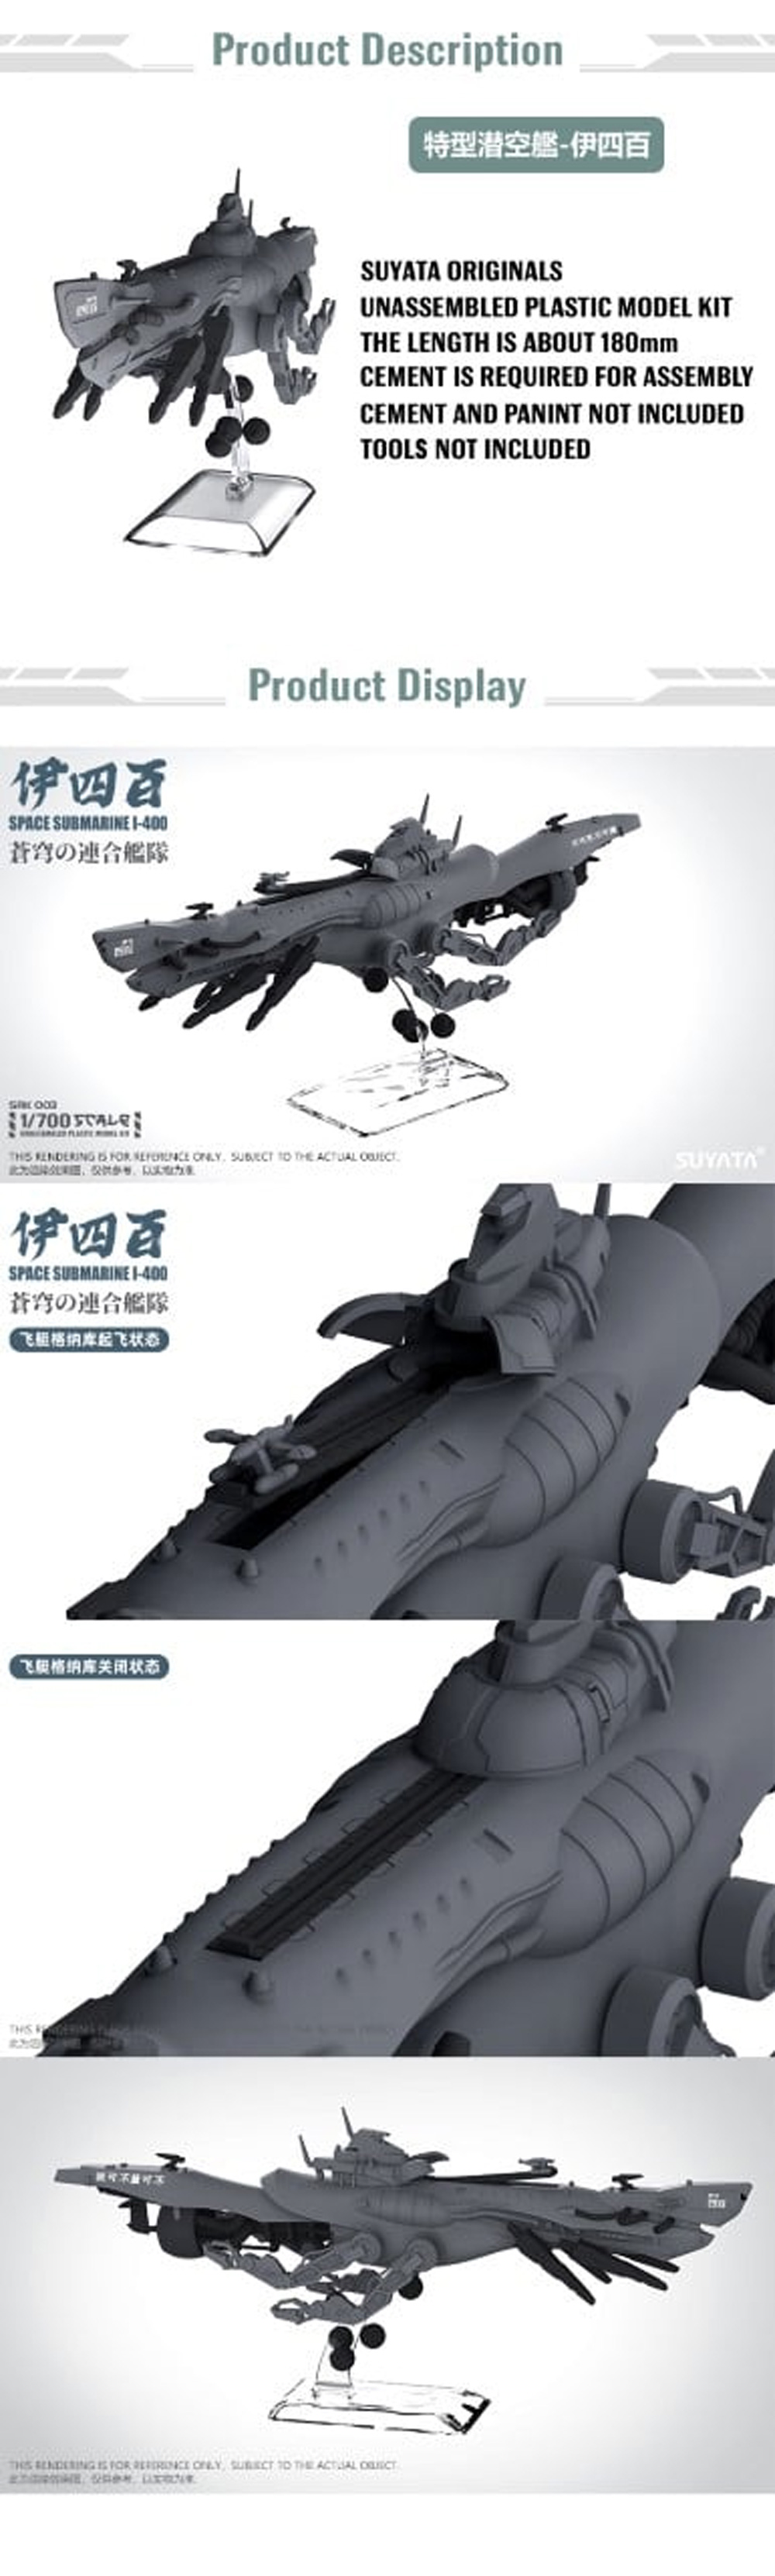 特型潜空艦 伊四百 プラモデル (SUYATA 蒼穹の連合艦隊 No.SRK003) 商品画像_2